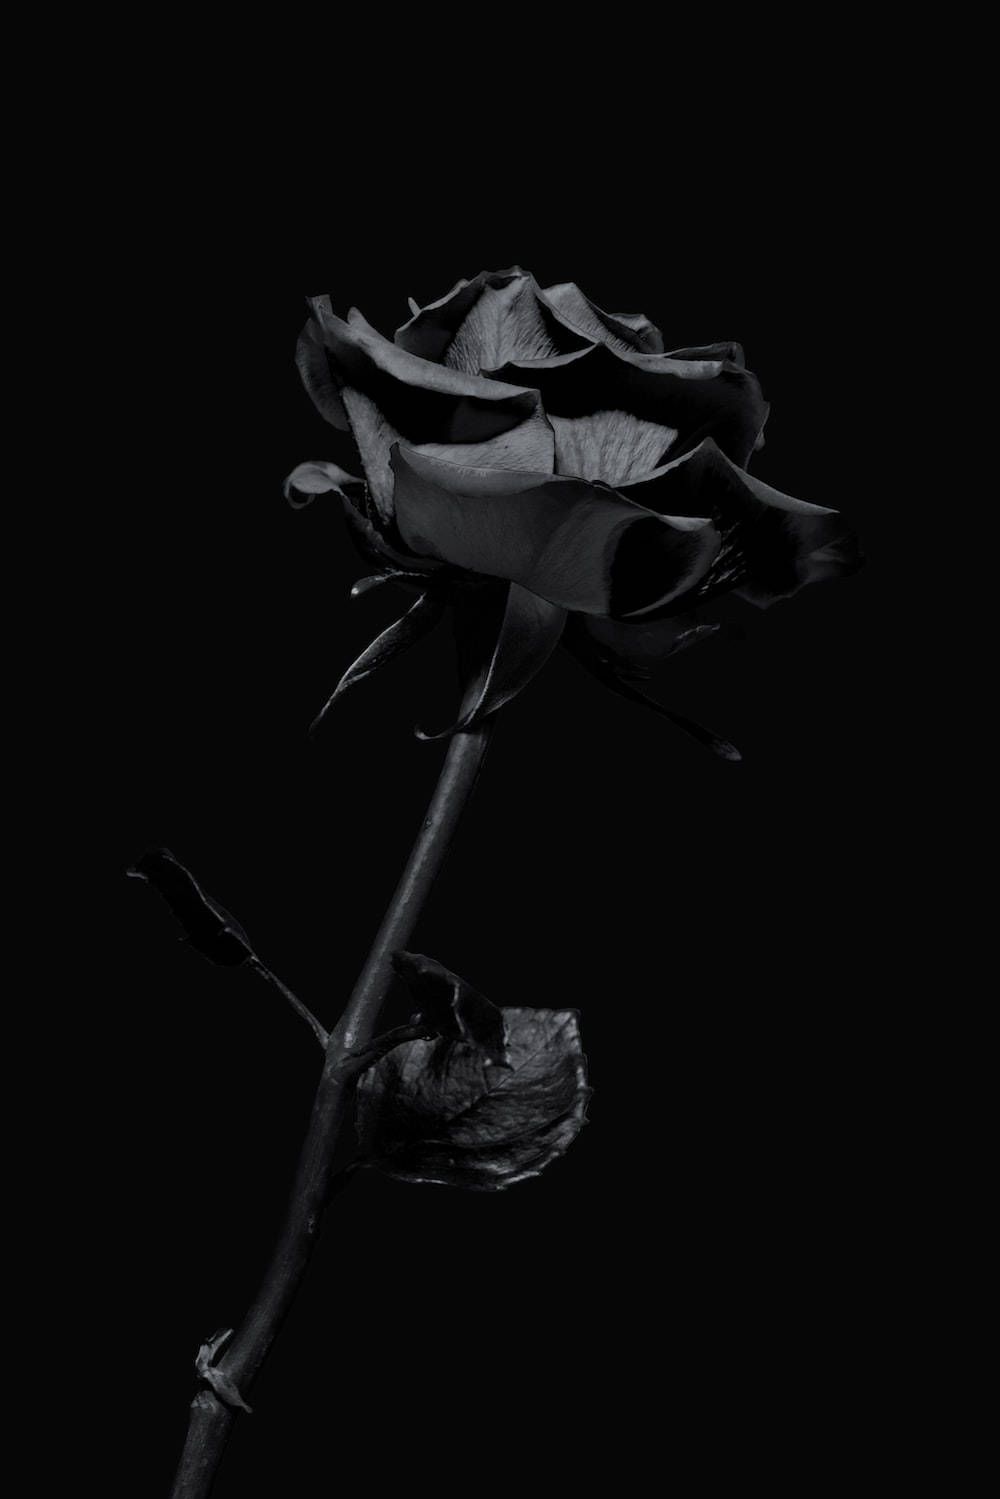  Schwarze Rosen Hintergrundbild 1000x1499. Downloaden Ästhetischeschwarze Rosen iPhone Wallpaper